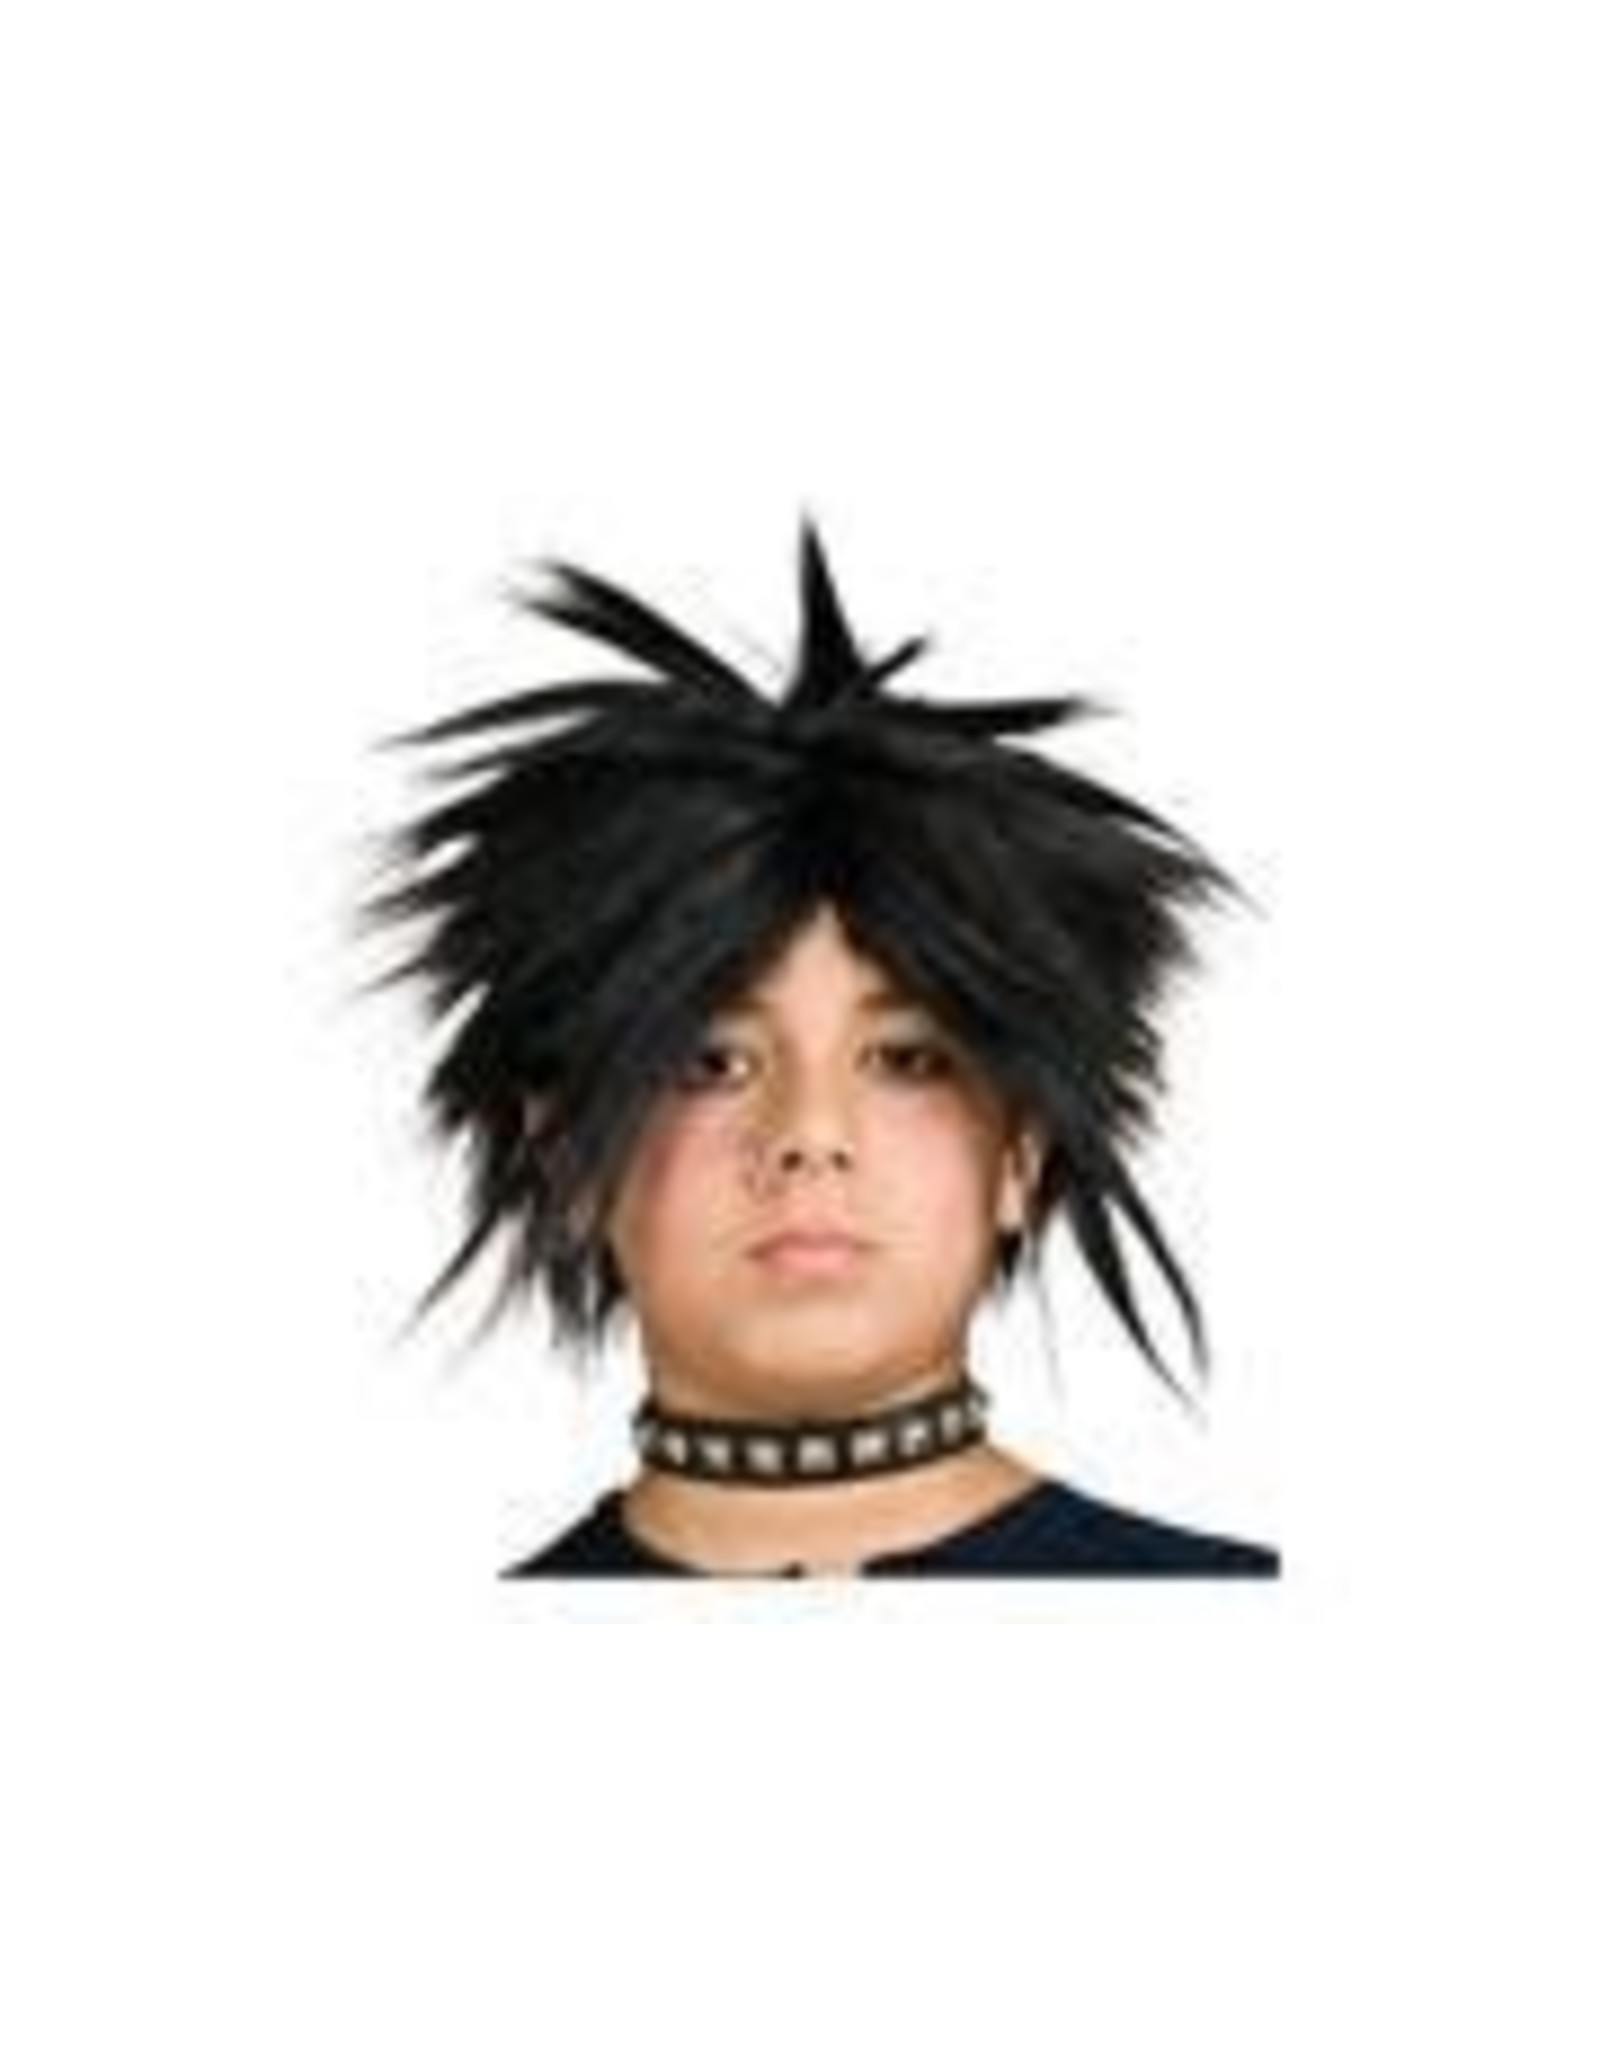 Rubie's Costumes Spiker Wig Rockstar, Black, Children